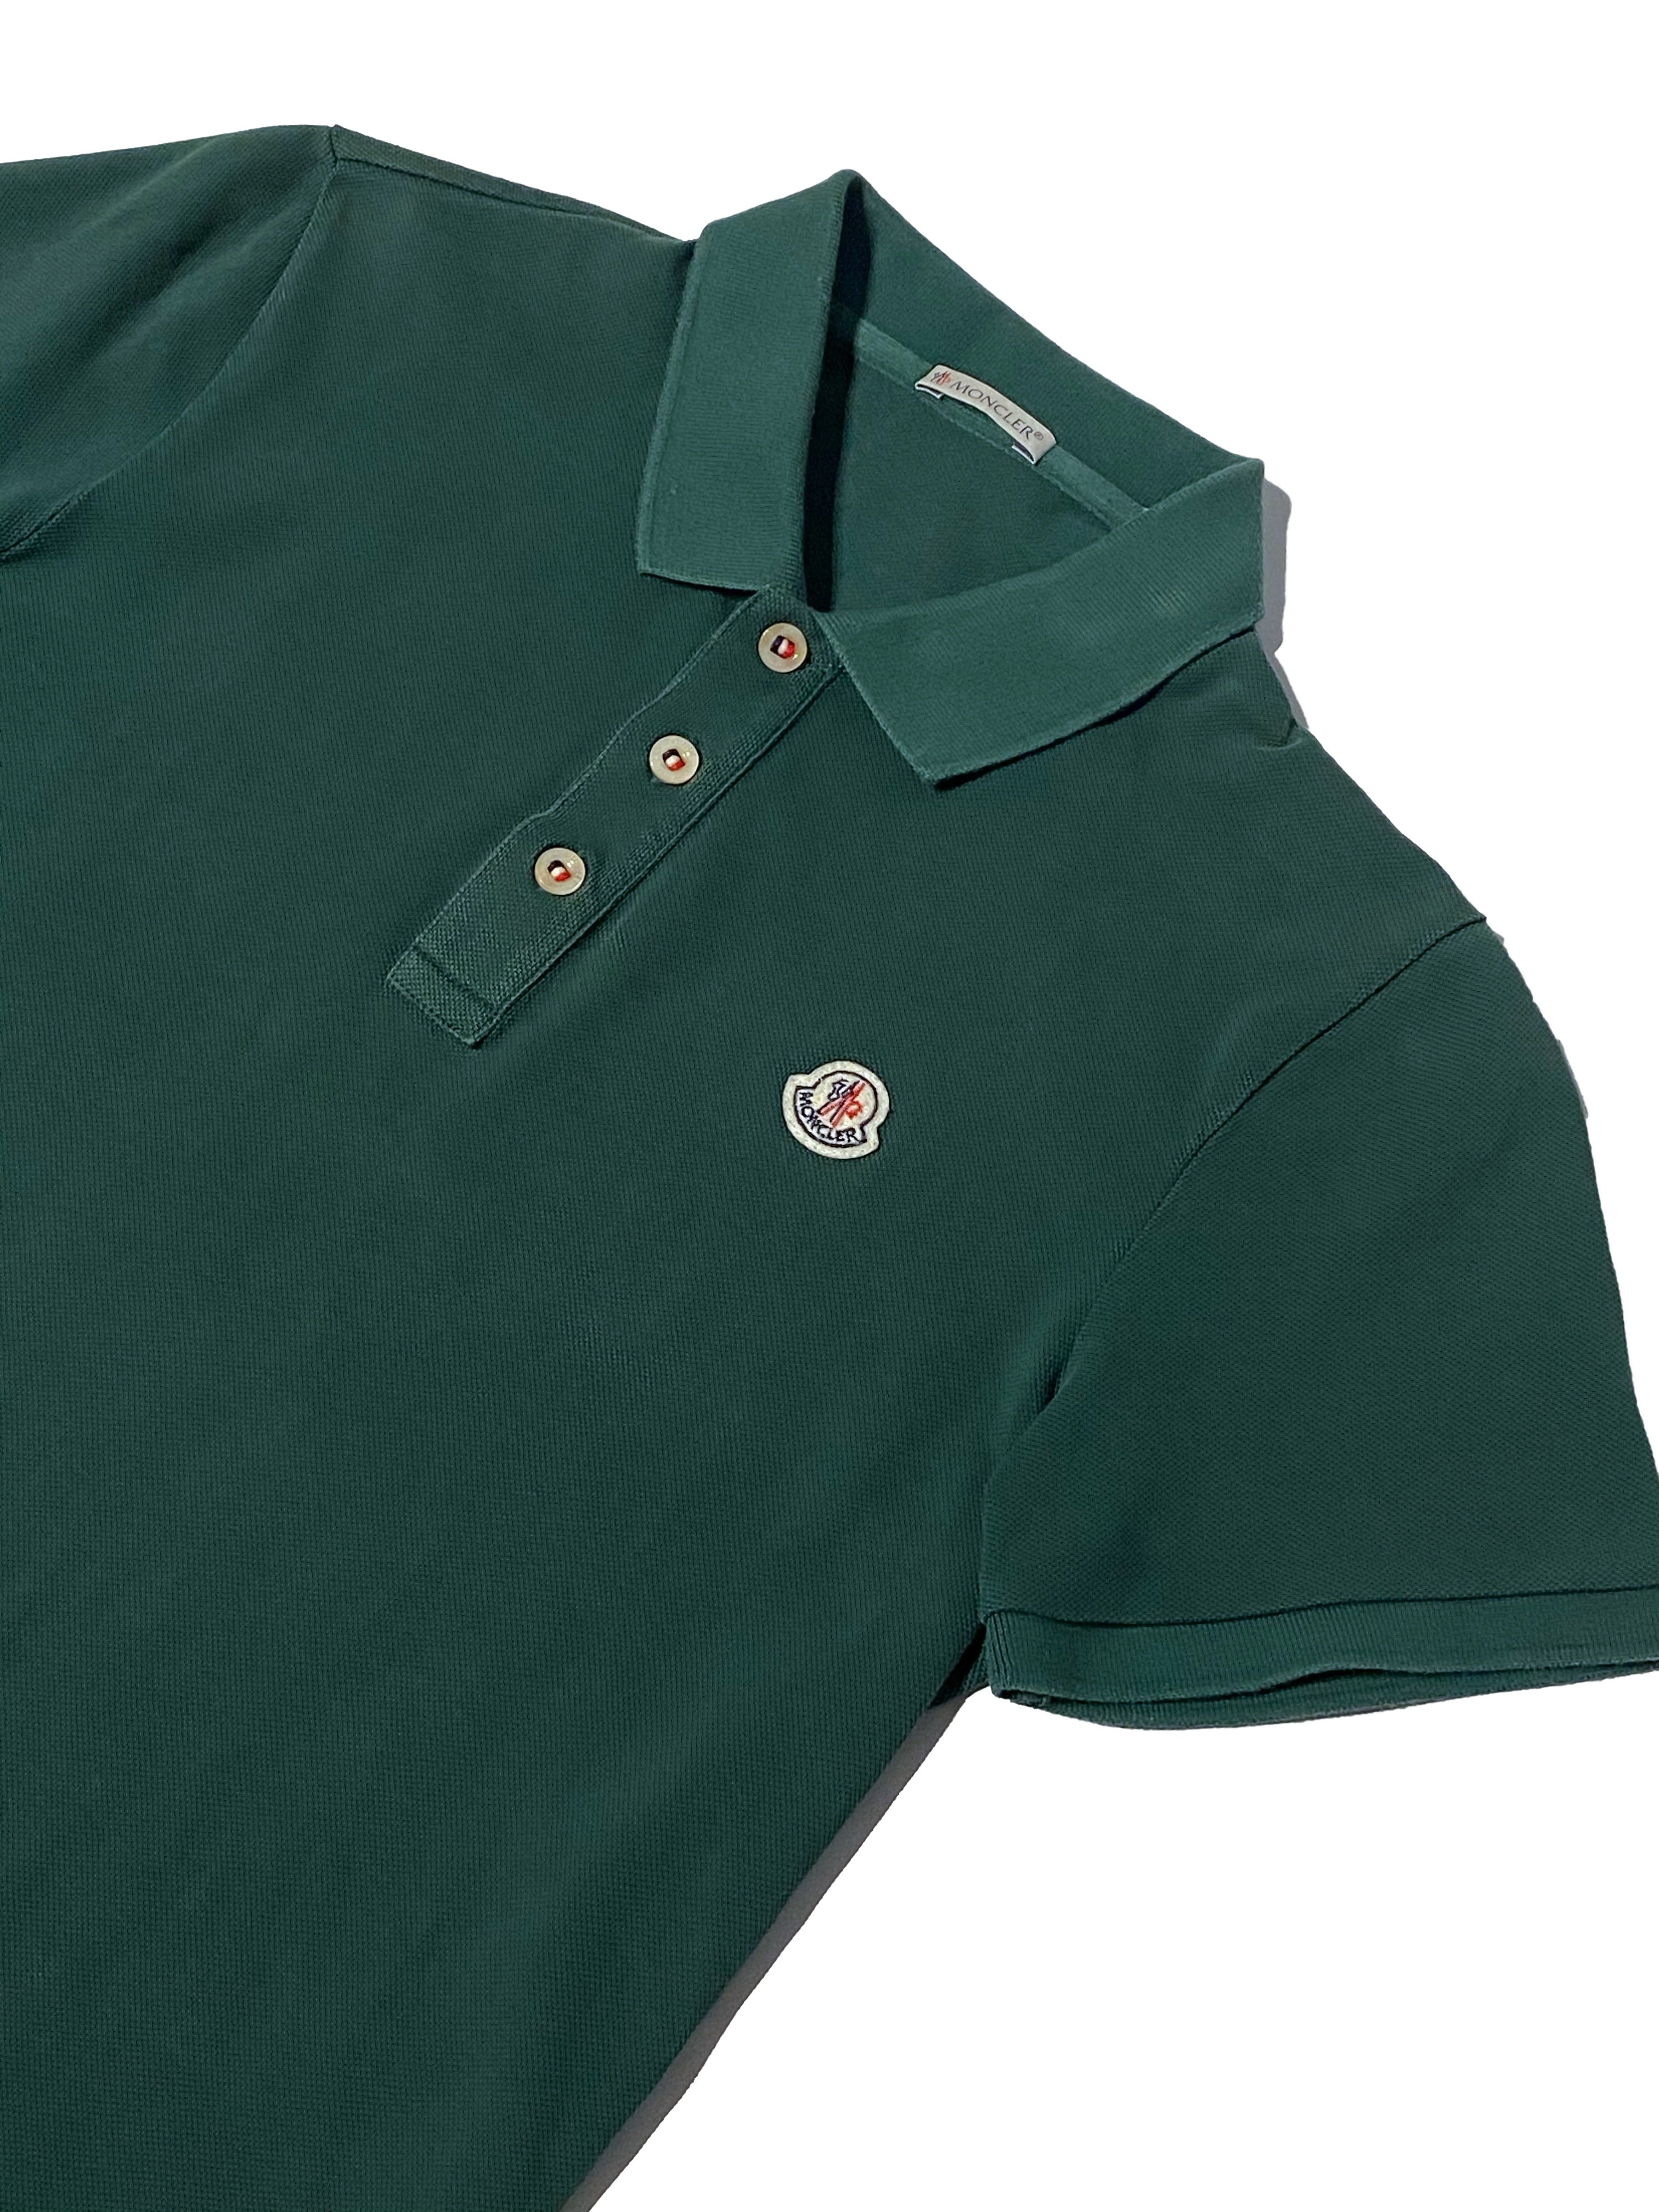 Moncler Polo Shirt - Size S